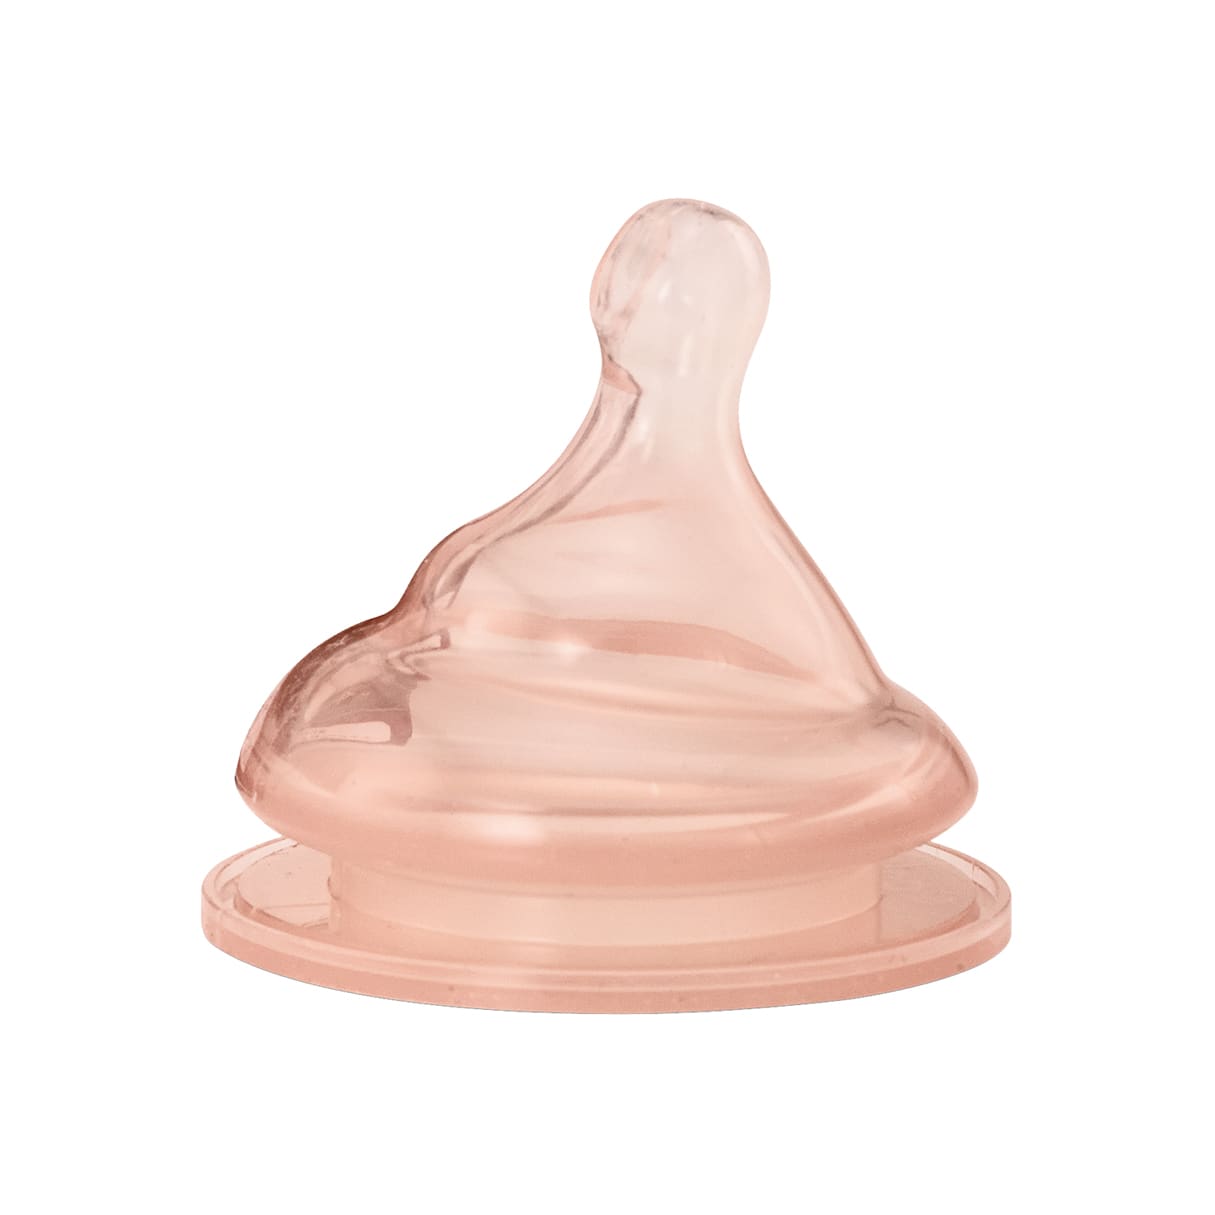 テテオ 授乳のお手本 哺乳びん耐熱ガラス製 160ml SSサイズ乳首付(- -): コンビトップ | ベビー用品・ベビー服の通販 | コンビ 公式ブランドストア